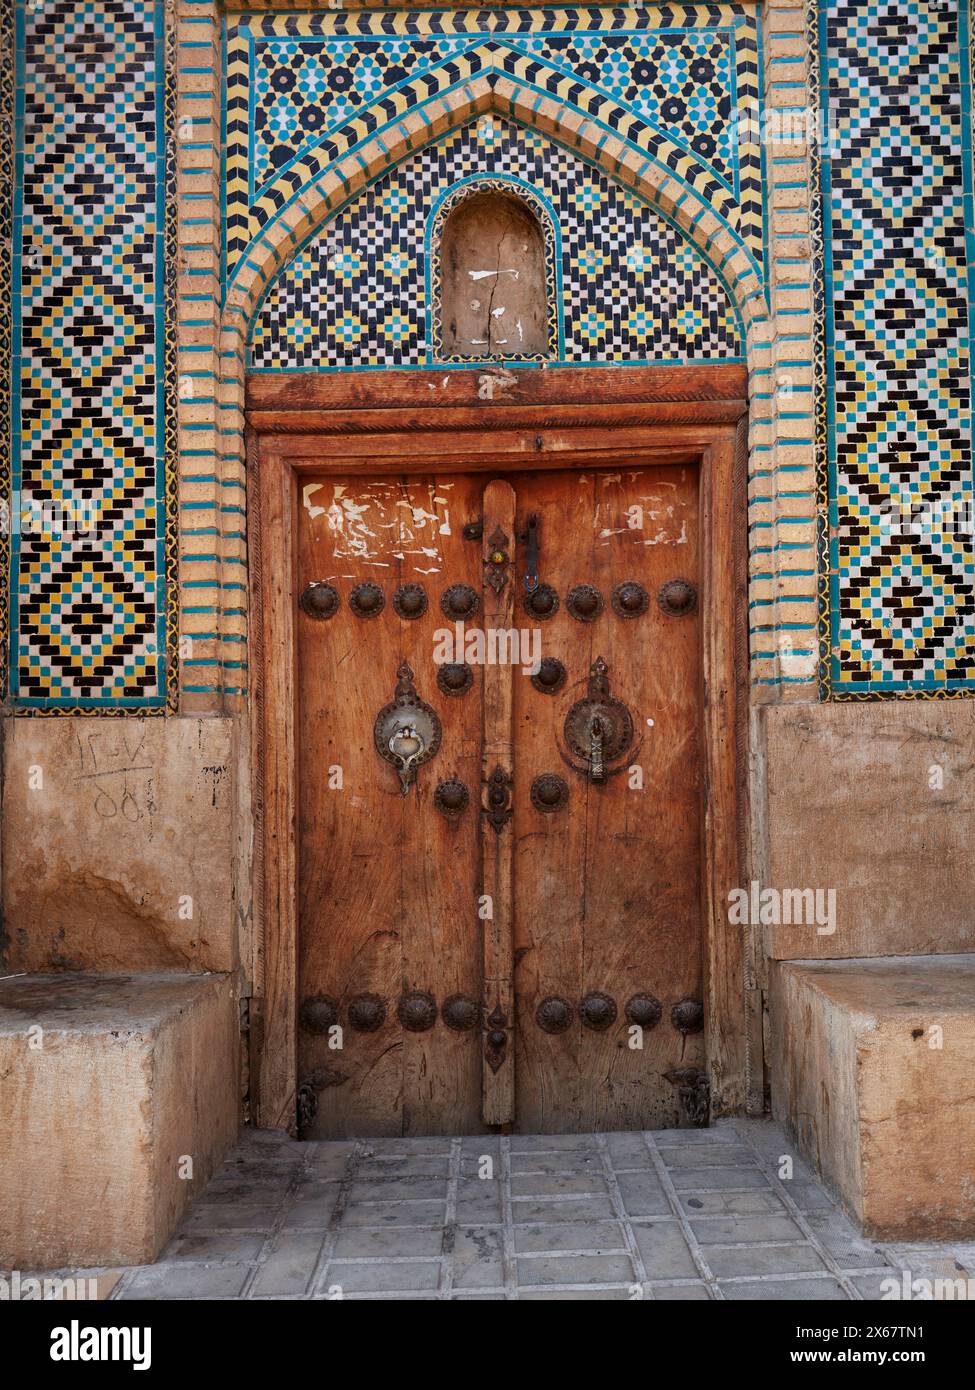 Geschlossene Holztür eines alten Gebäudes mit zwei separaten Klopfern - Metallstange für Männer und Metallring für Frauen. Shiraz, Iran. Stockfoto